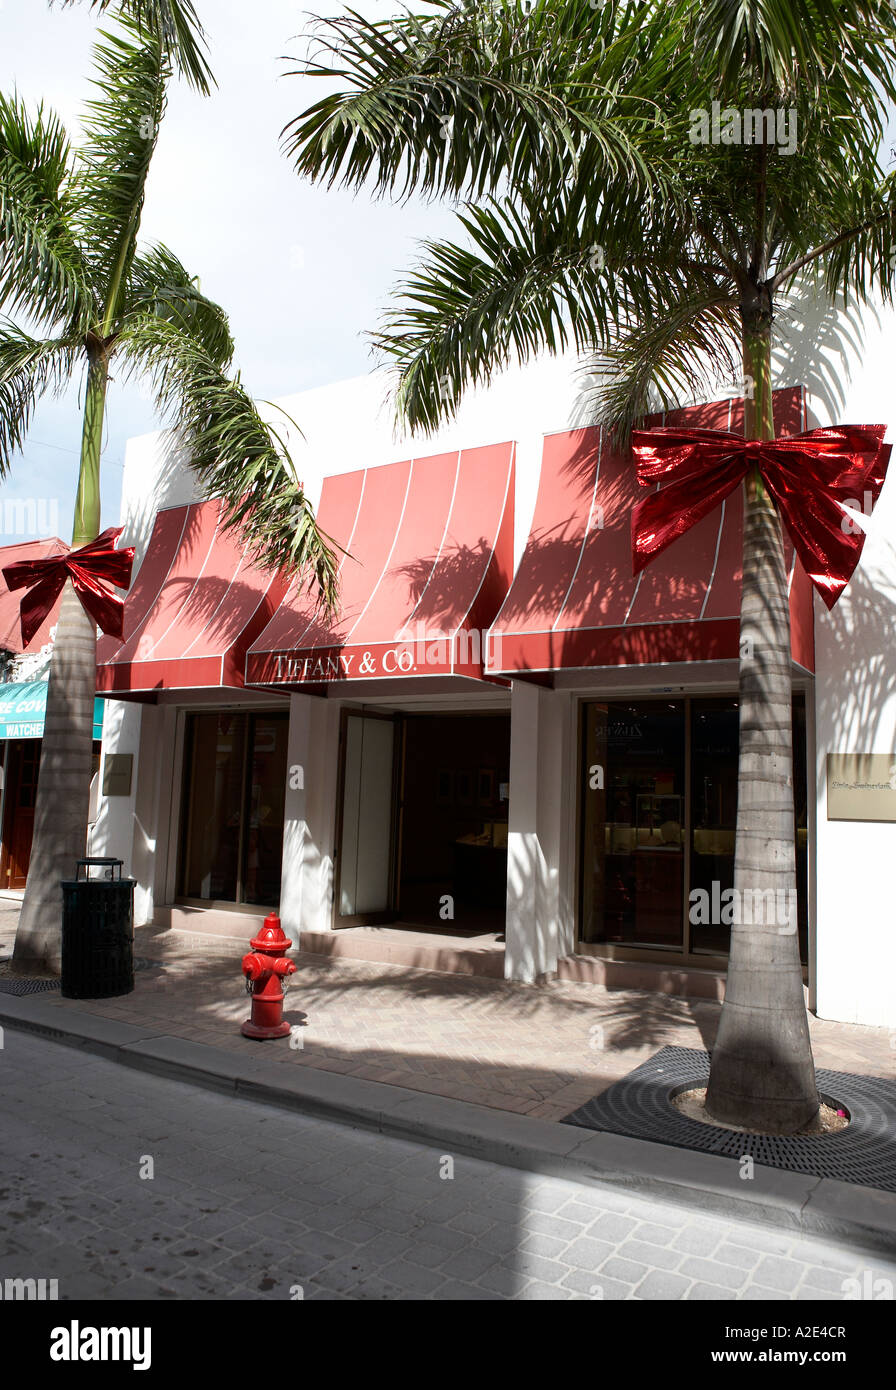 Tiffany & Co. store in Miami, Florida